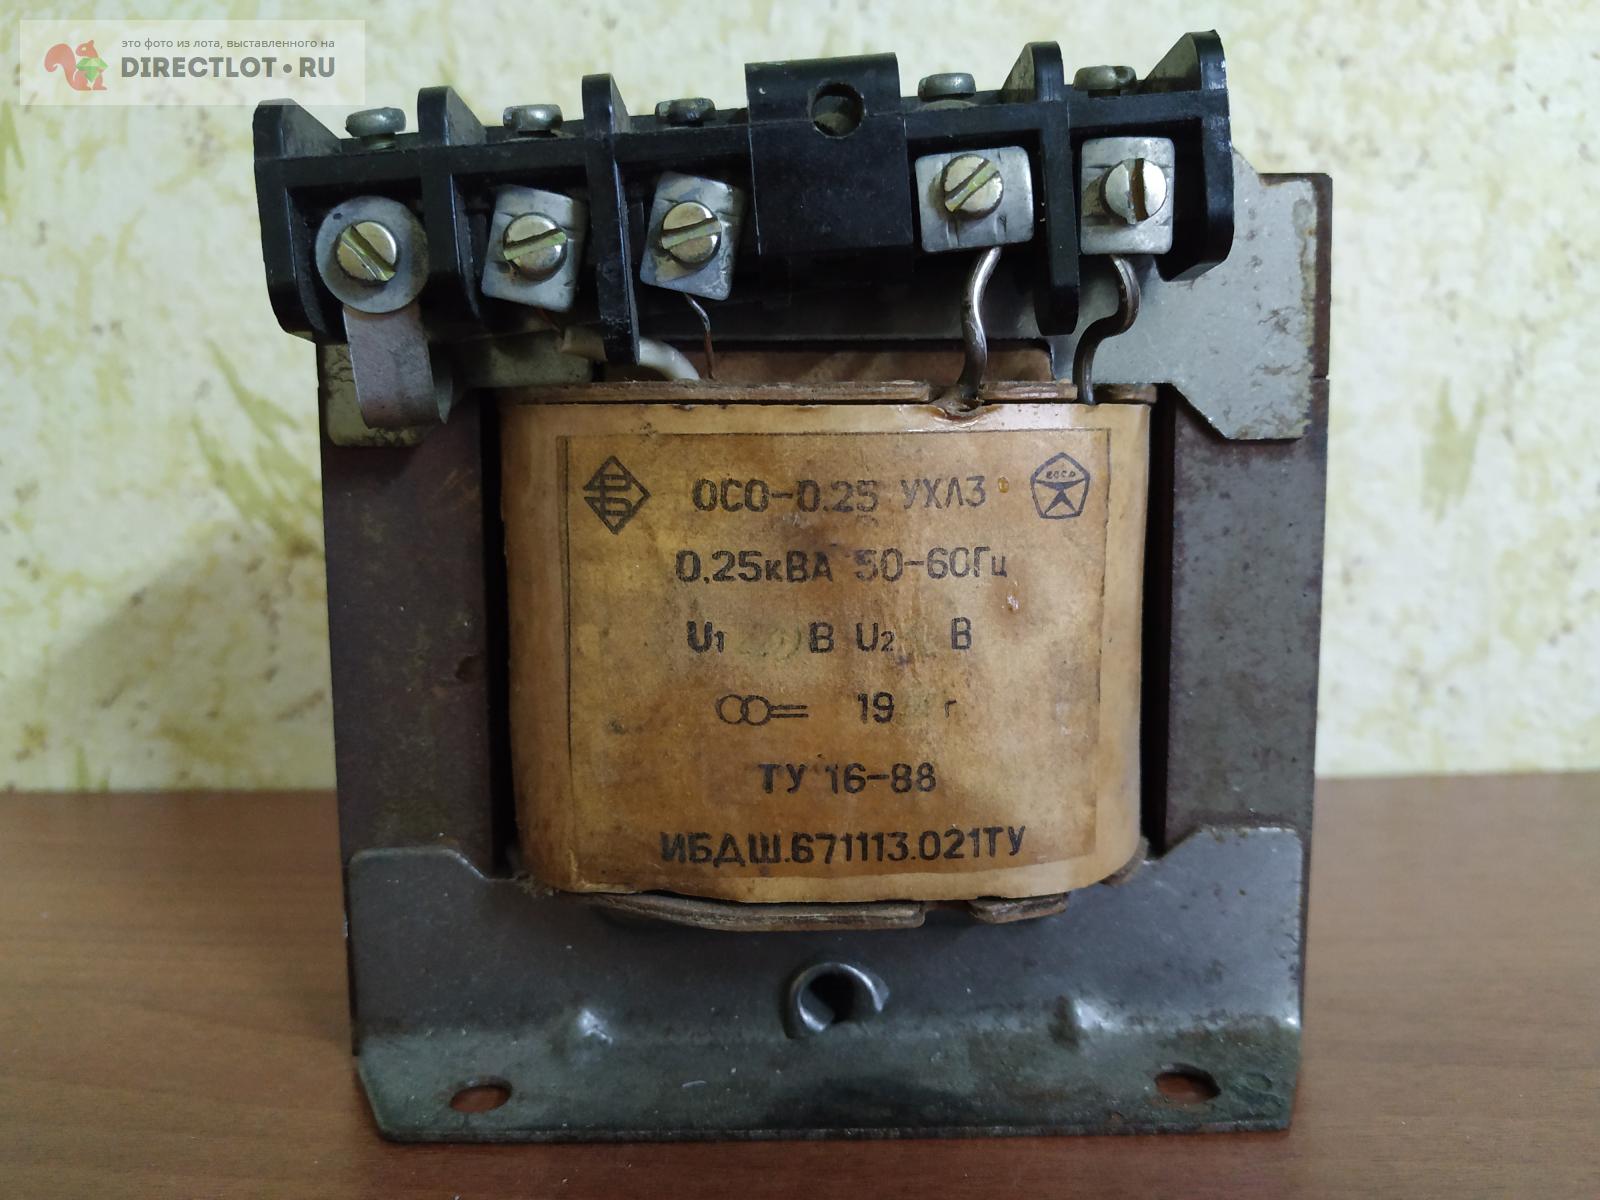 Понижающий трансформатор 220 на 36 вольт ещё с советских времён  .